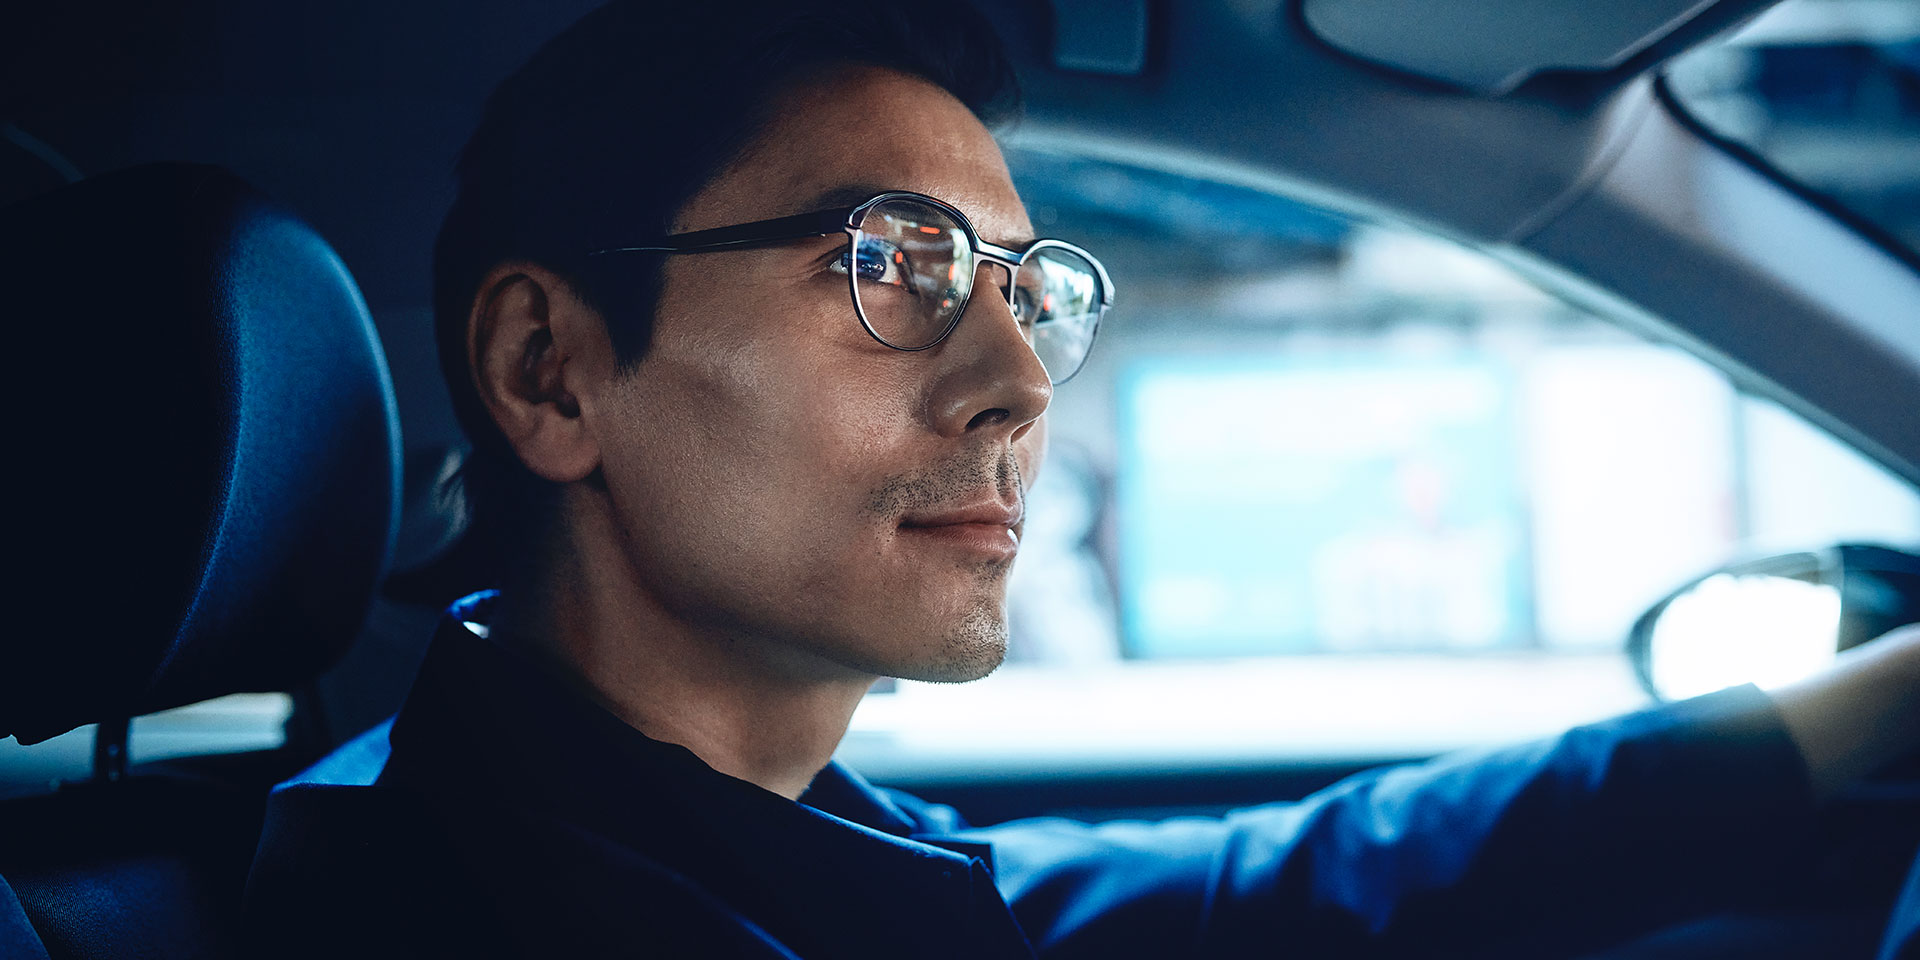 微笑んで、自信ありげに運転する男性。彼はZEISS DriveSafe単焦点レンズを掛けている。